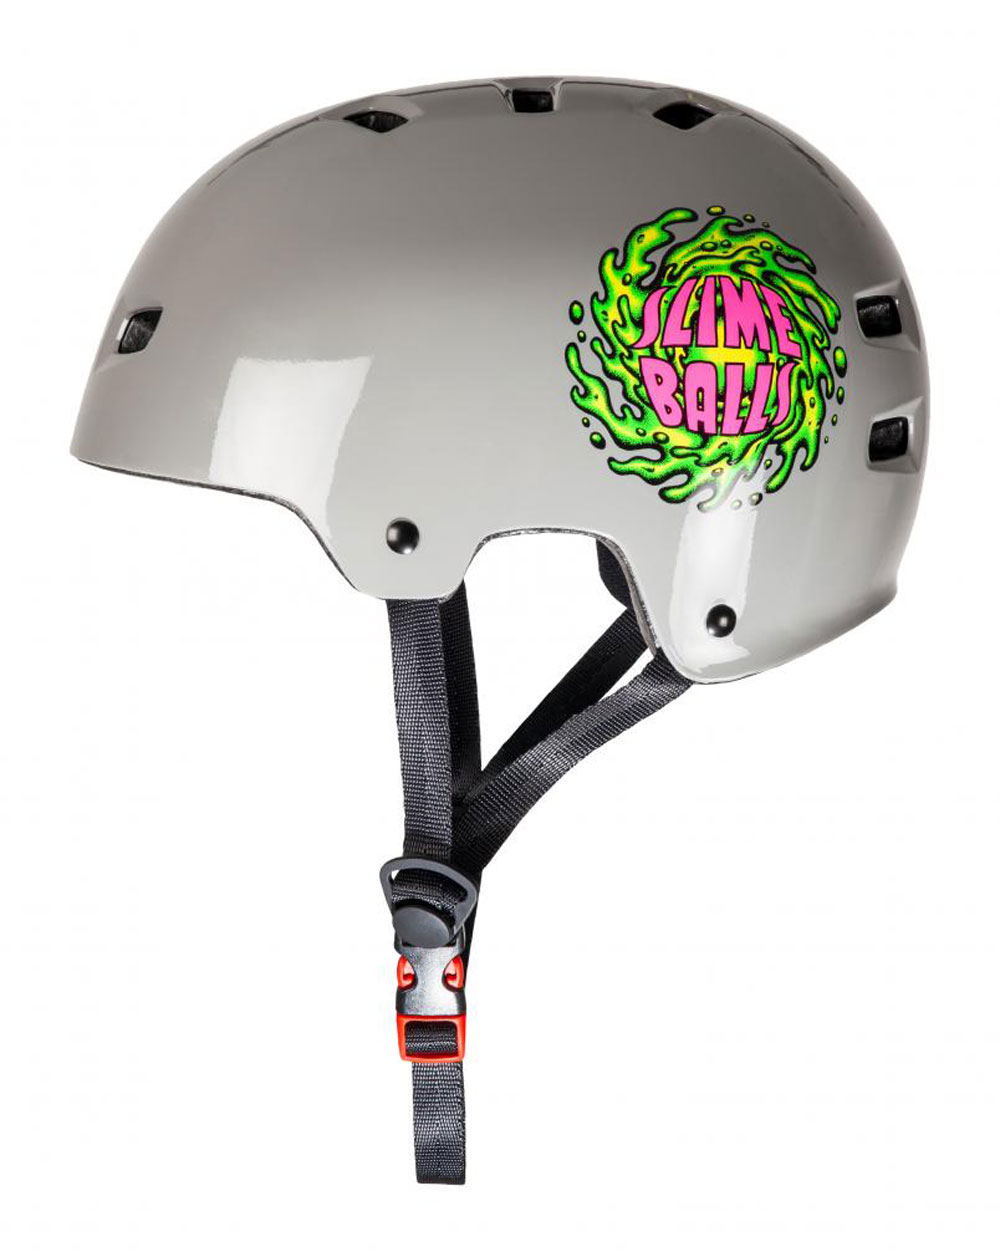 Bullet Safety Gear Casco Skateboard Bullet x Slime Balls Slime Logo Grey